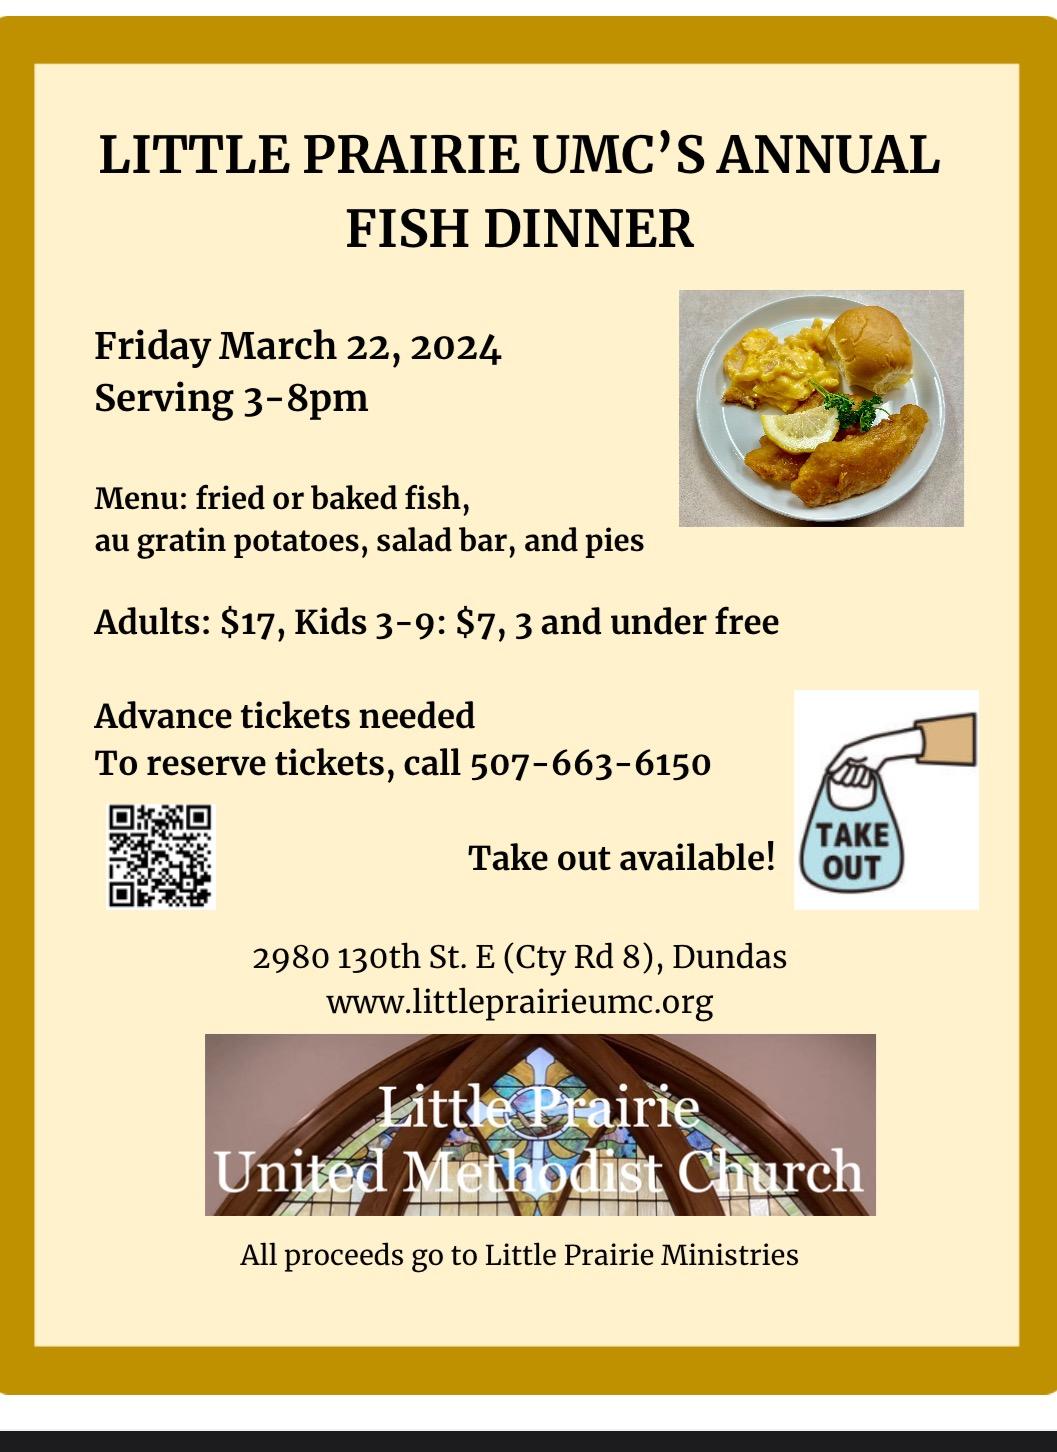 Fish dinner poster